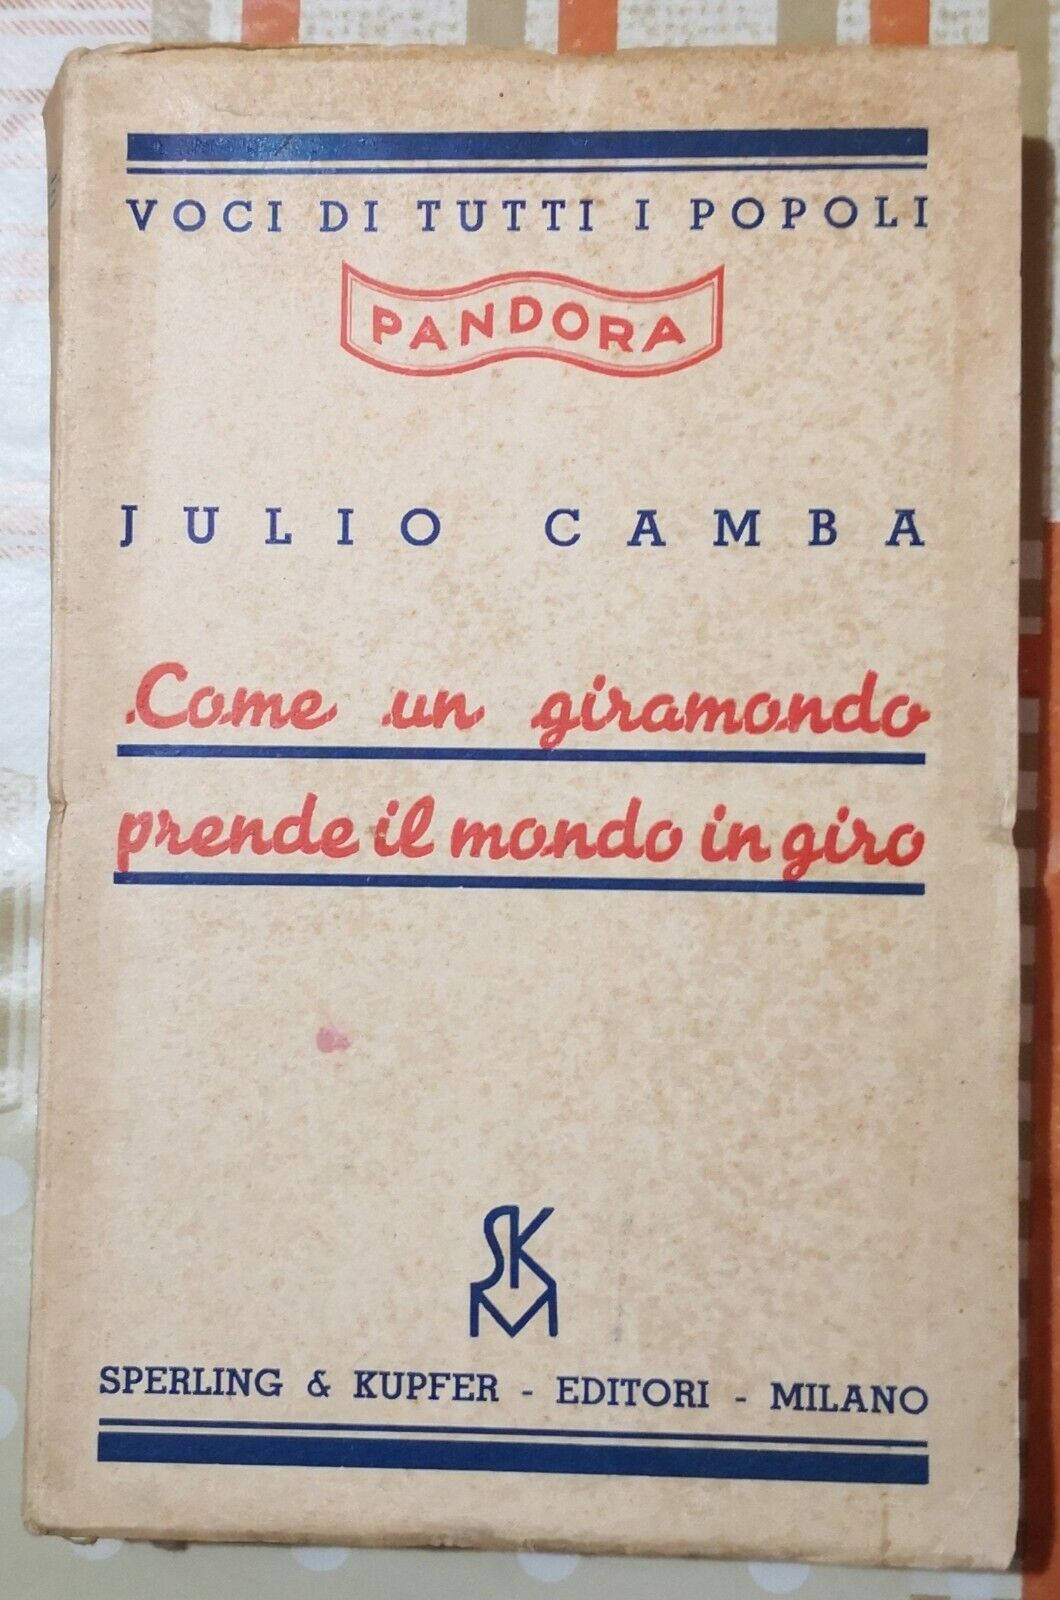 Come un giramondo prende il mondo in giro  di Julio Camba,  1936,  Sperling-F